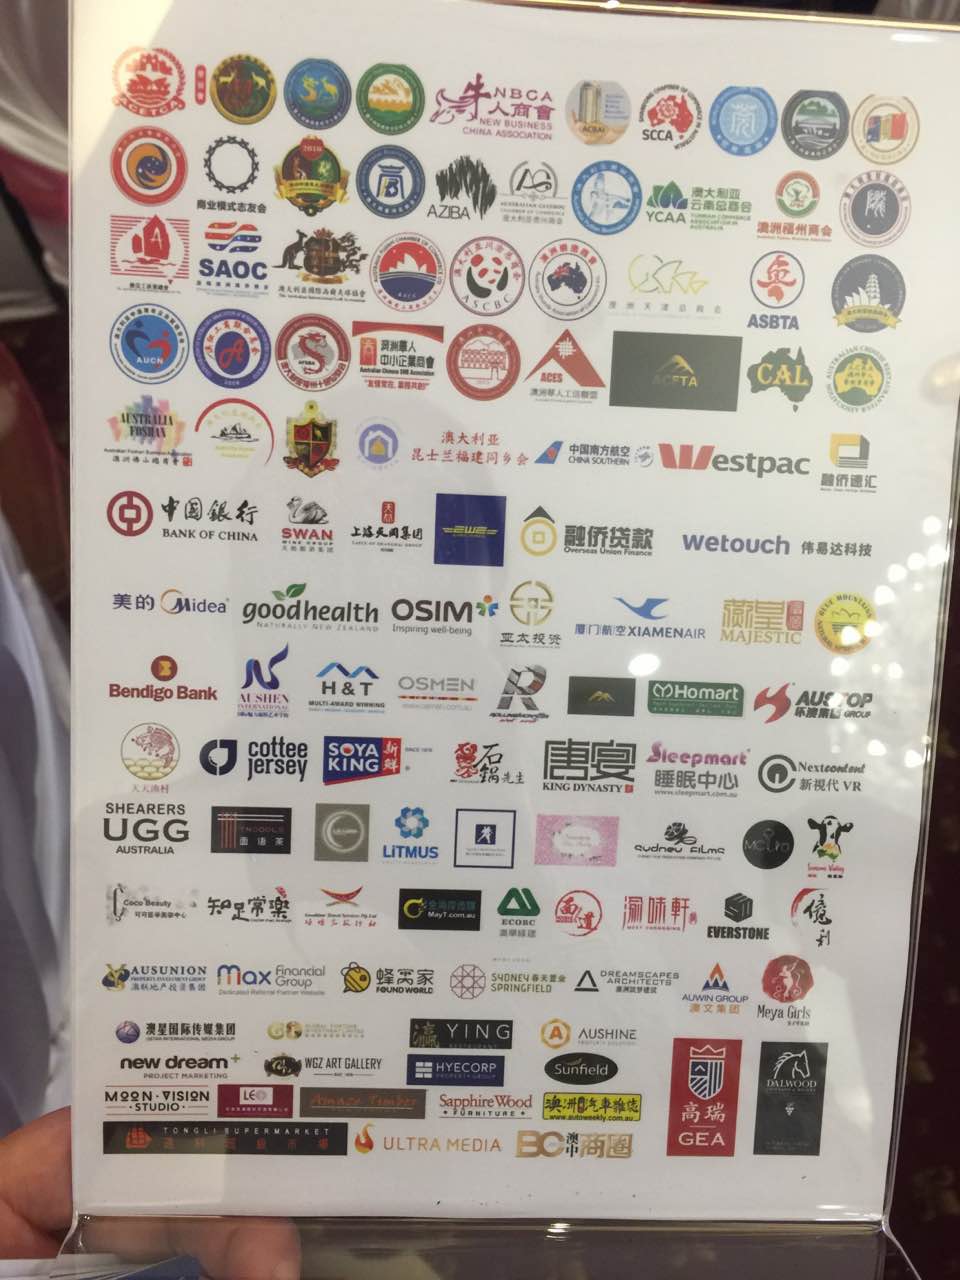 13 2016年澳洲华人商会年会在悉尼盛大举行  开创资源共享合作双赢新局面 